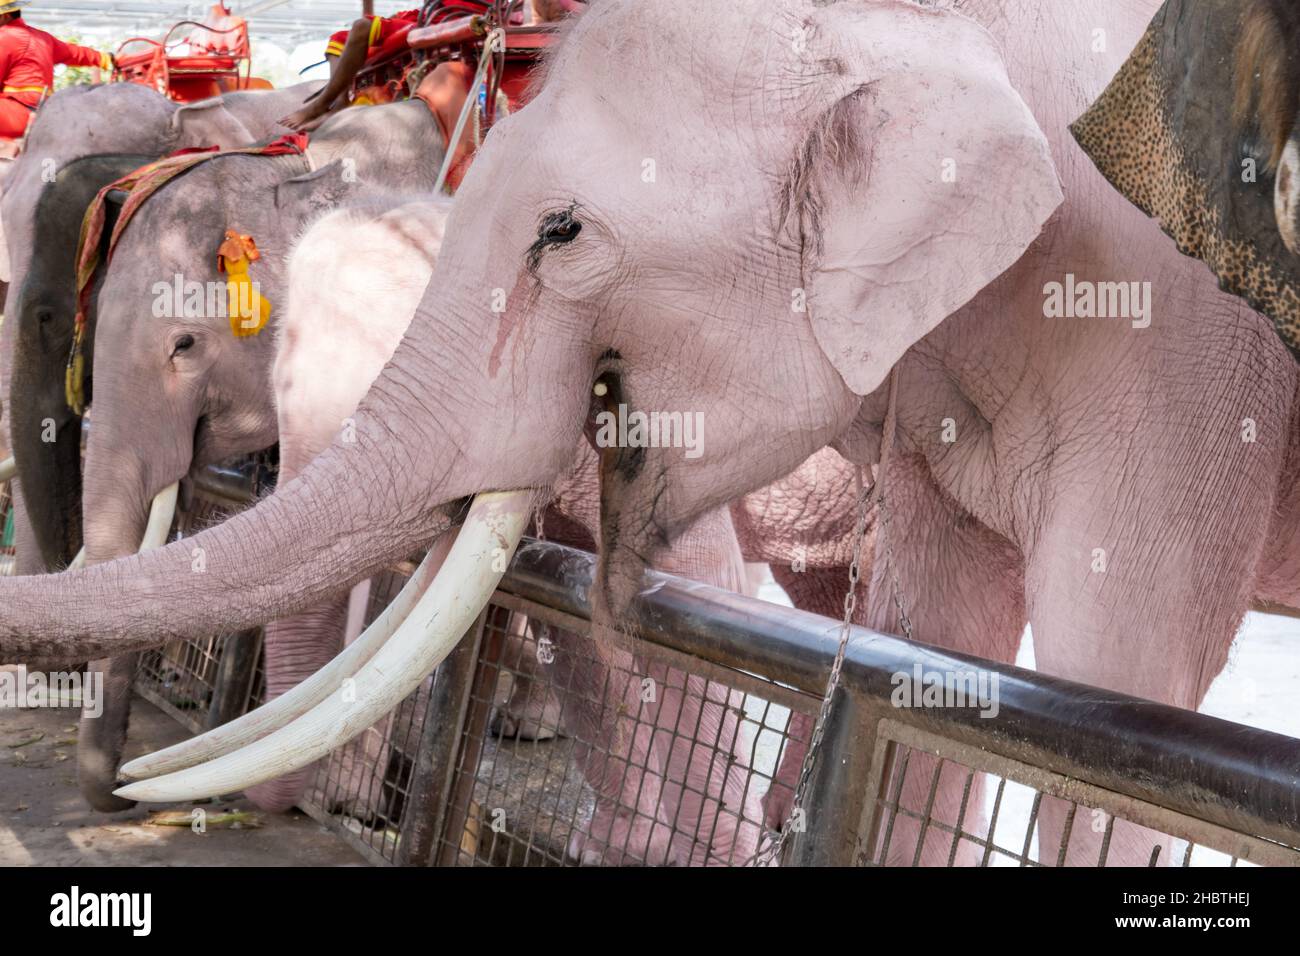 Elephants at the Ayutthaya Elephant Palace and Royal Kraal at the Ayutthaya Historic Park north of Bangkok, Thailand. Stock Photo